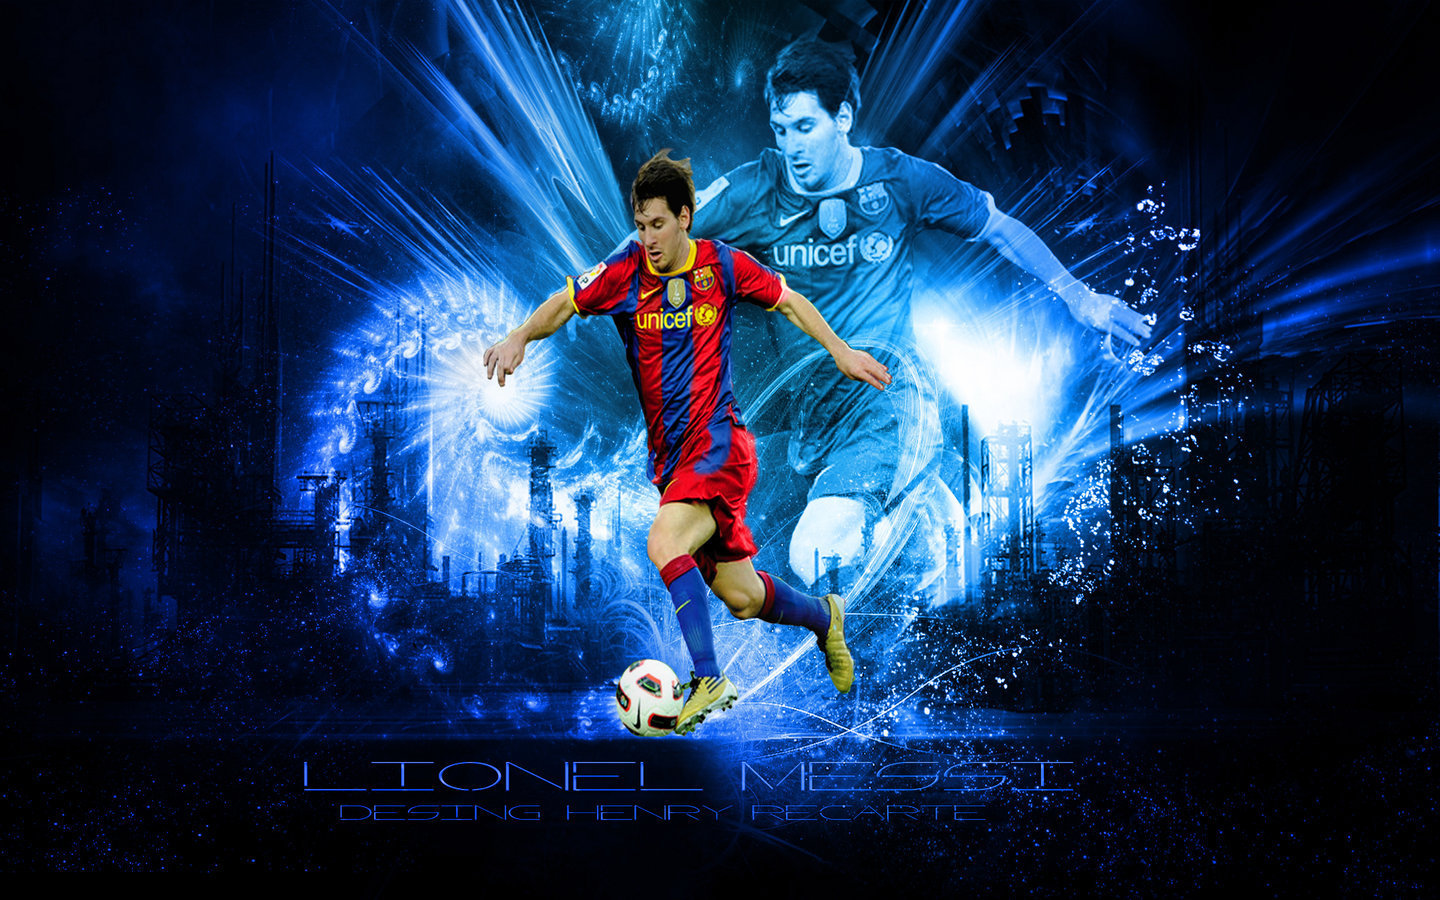 Lionel Messi wallpapers Wallpapers Hightlight 1440x900